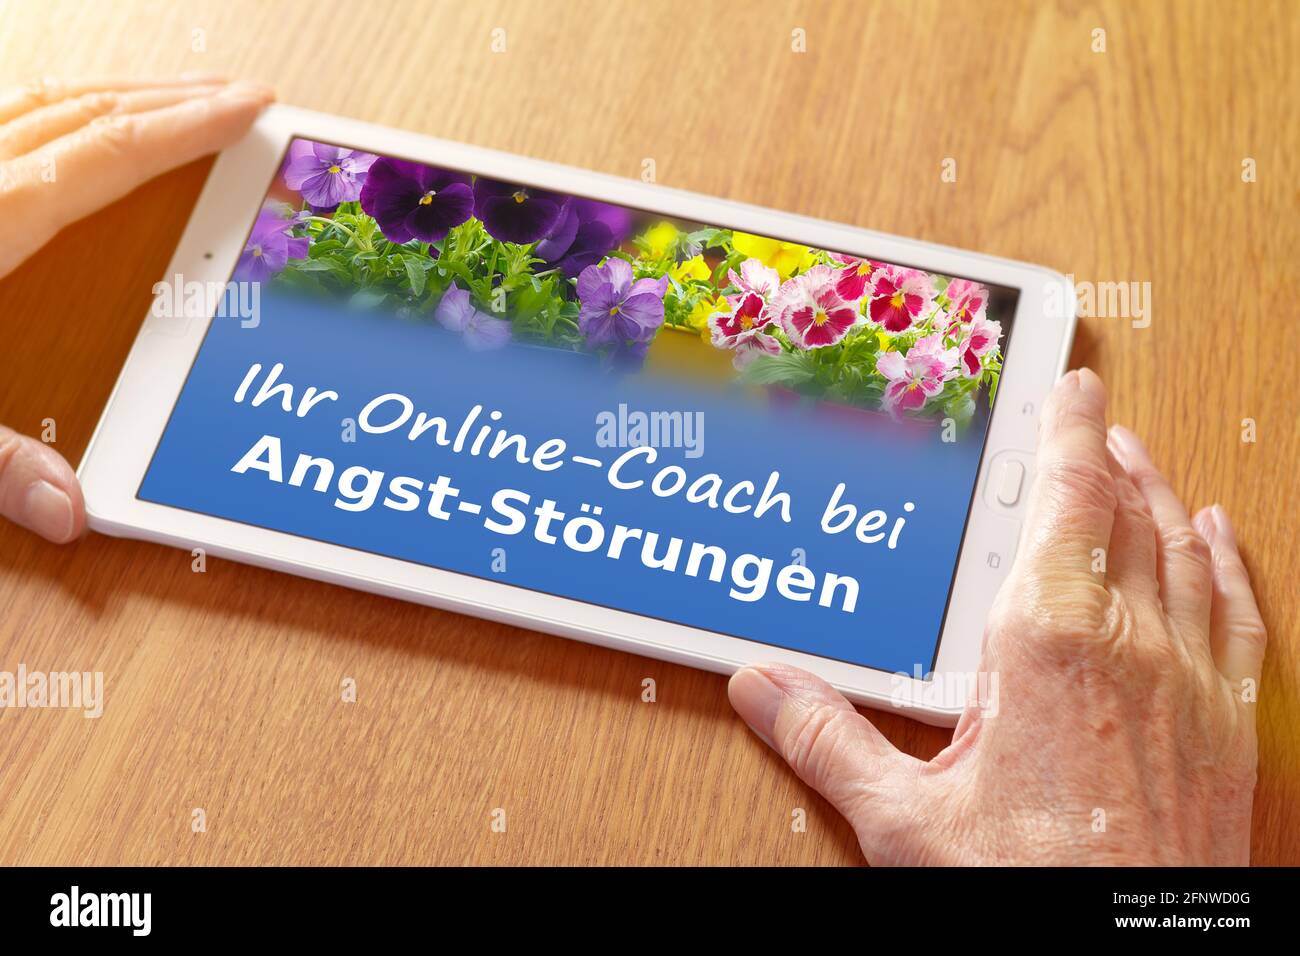 Telemotherapie-Konzept: Hände mit einer Beratungs-App auf einem Tablet-pc, Übersetzung des deutschen Textes: Online-Coaching bei Angststörungen. Stockfoto